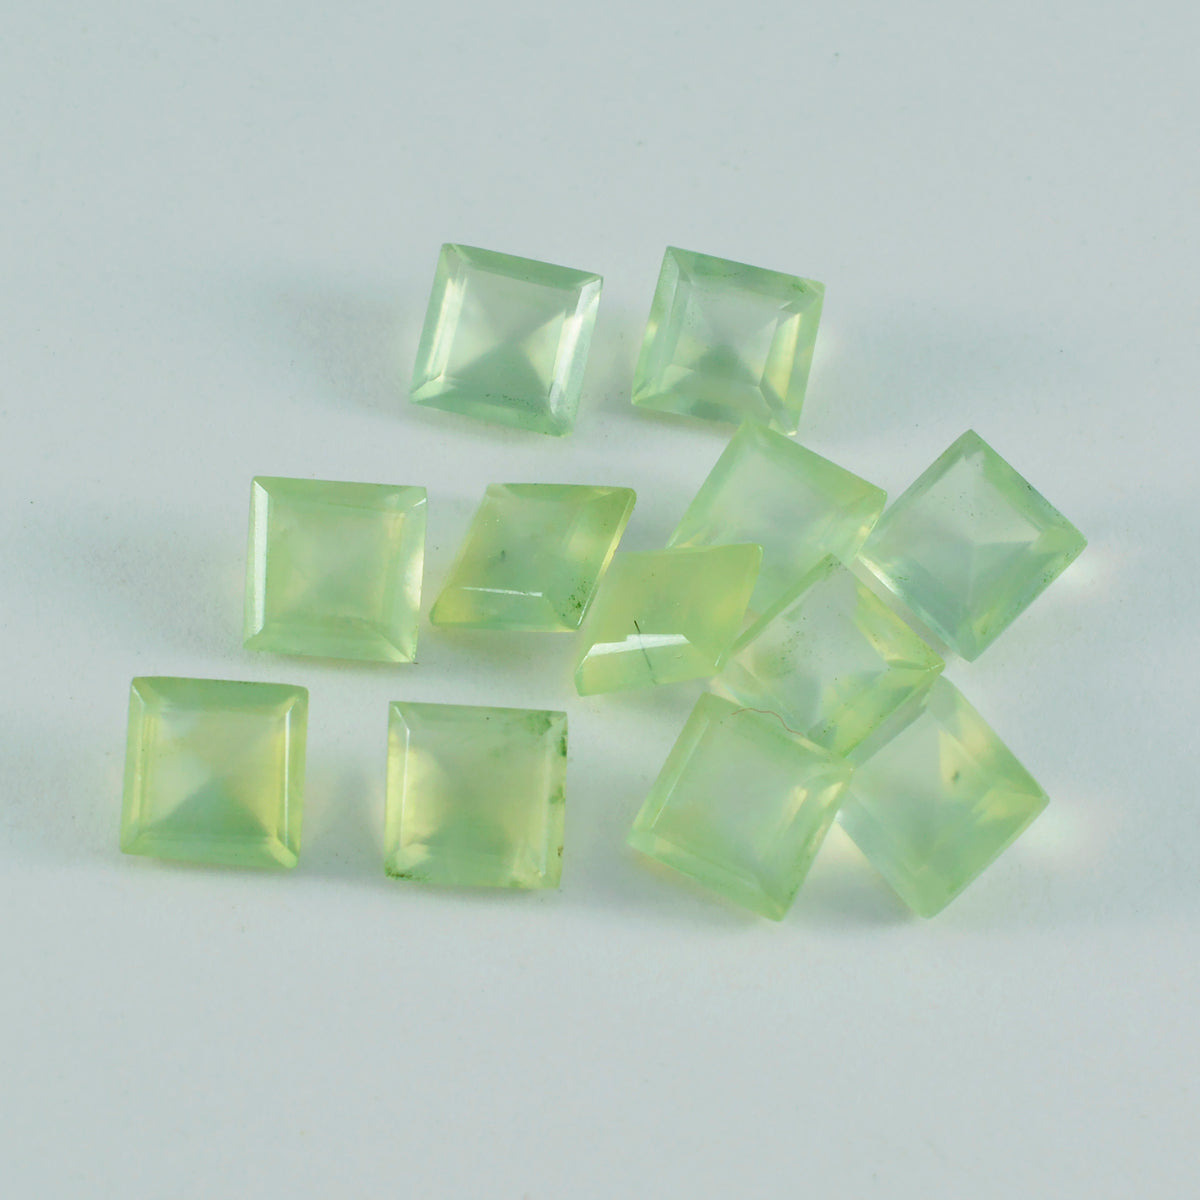 Riyogems 1PC groene prehniet gefacetteerde 7x7 mm vierkante vorm, mooie kwaliteitsedelsteen